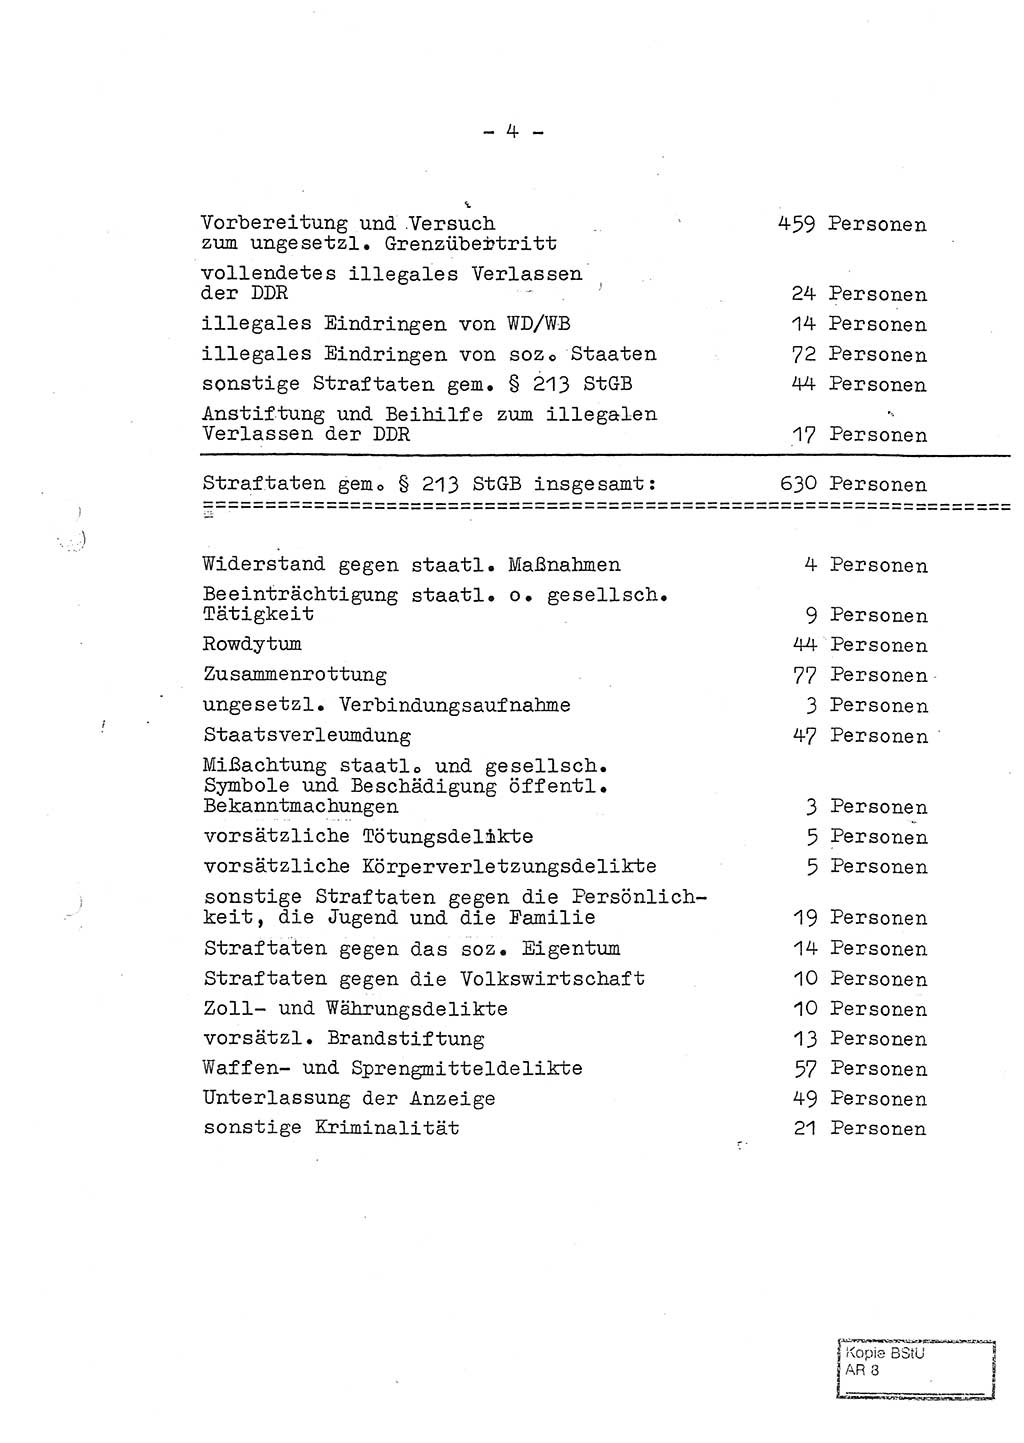 Jahresbericht der Hauptabteilung (HA) Ⅸ 1969 des Ministeriums für Staatssicherheit (MfS) der Deutschen Demokratischen Republik (DDR), Berlin 1970, Seite 4 (J.-Ber. MfS DDR HA Ⅸ /69 1970, S. 4)